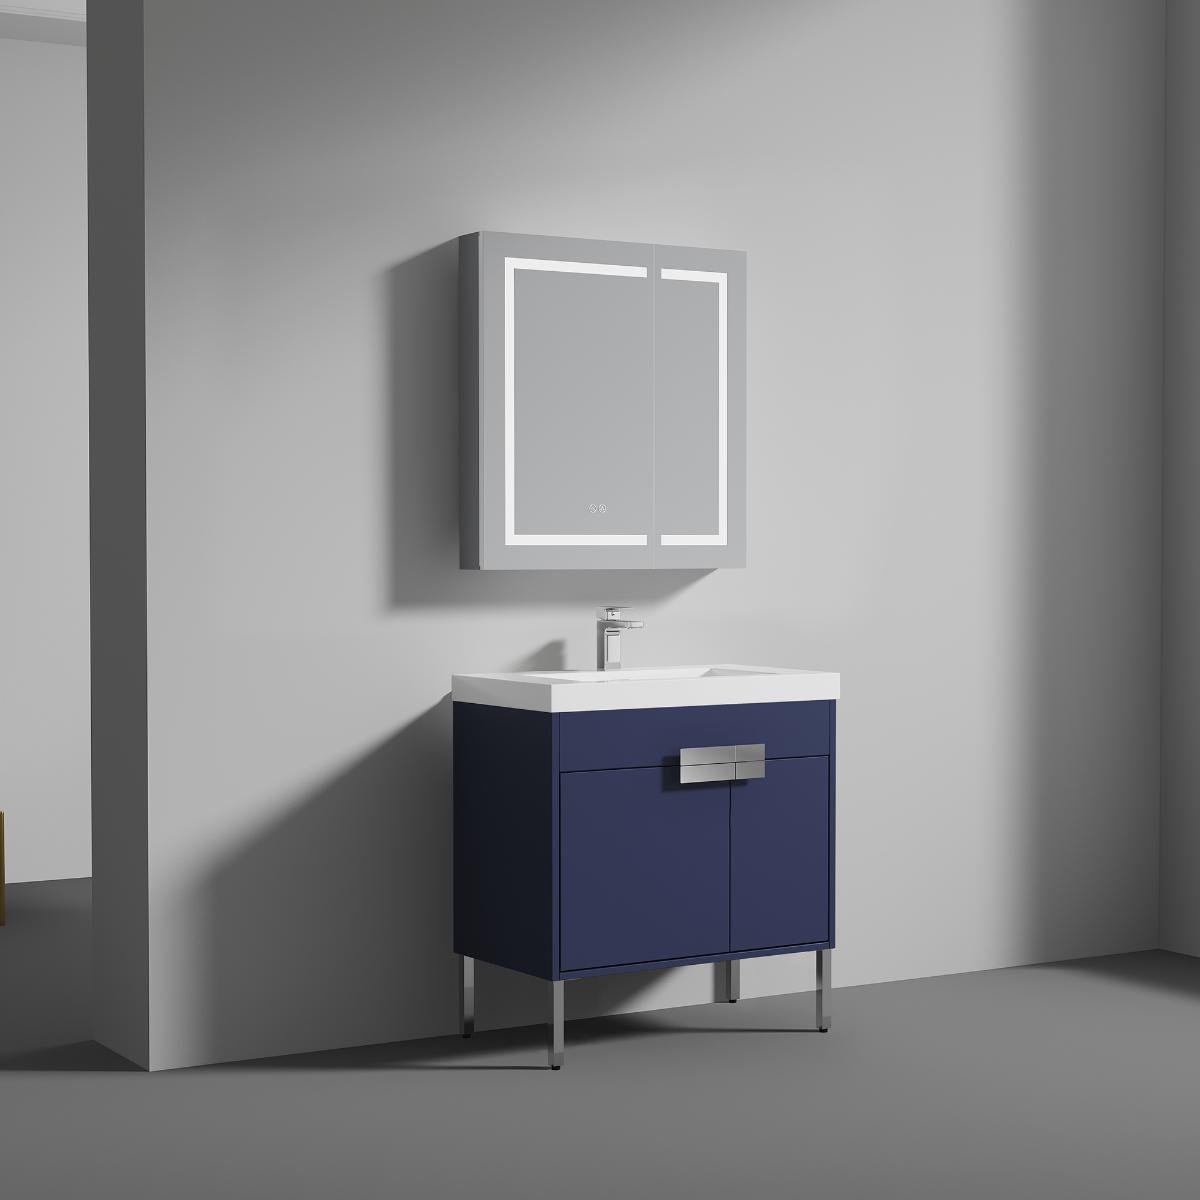 Bari 36" Bathroom Vanity  #size_36"  #color_navy blue